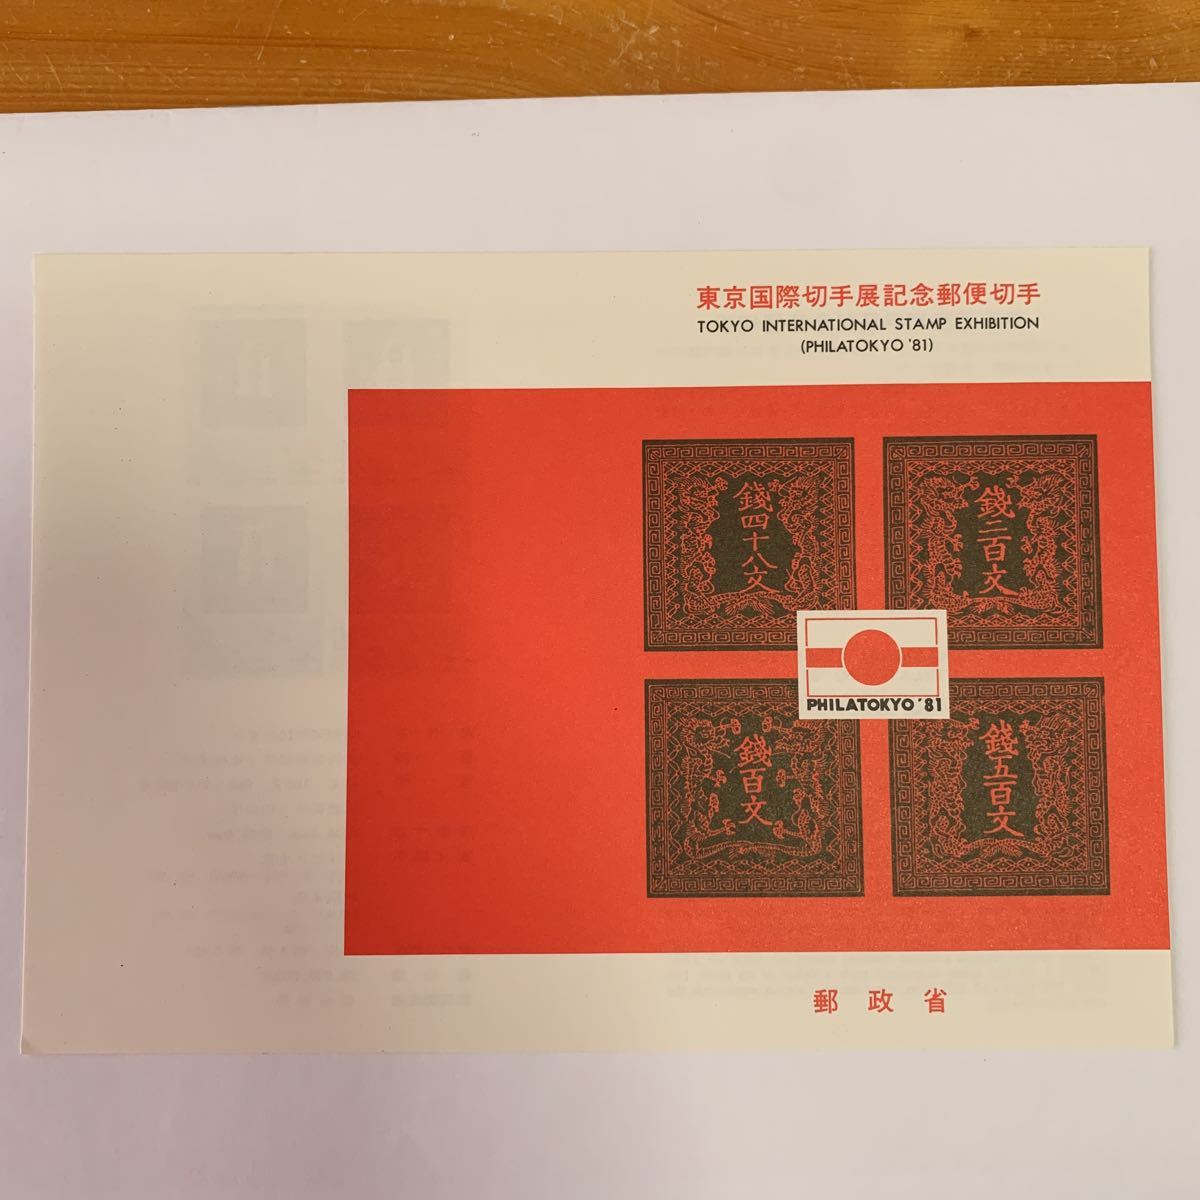 Перипочка Leaflet No Mamp 1981 Министерство постов и телекоммуникаций Токио международной выставки марки памяти по почте 9 октября 1980 г.